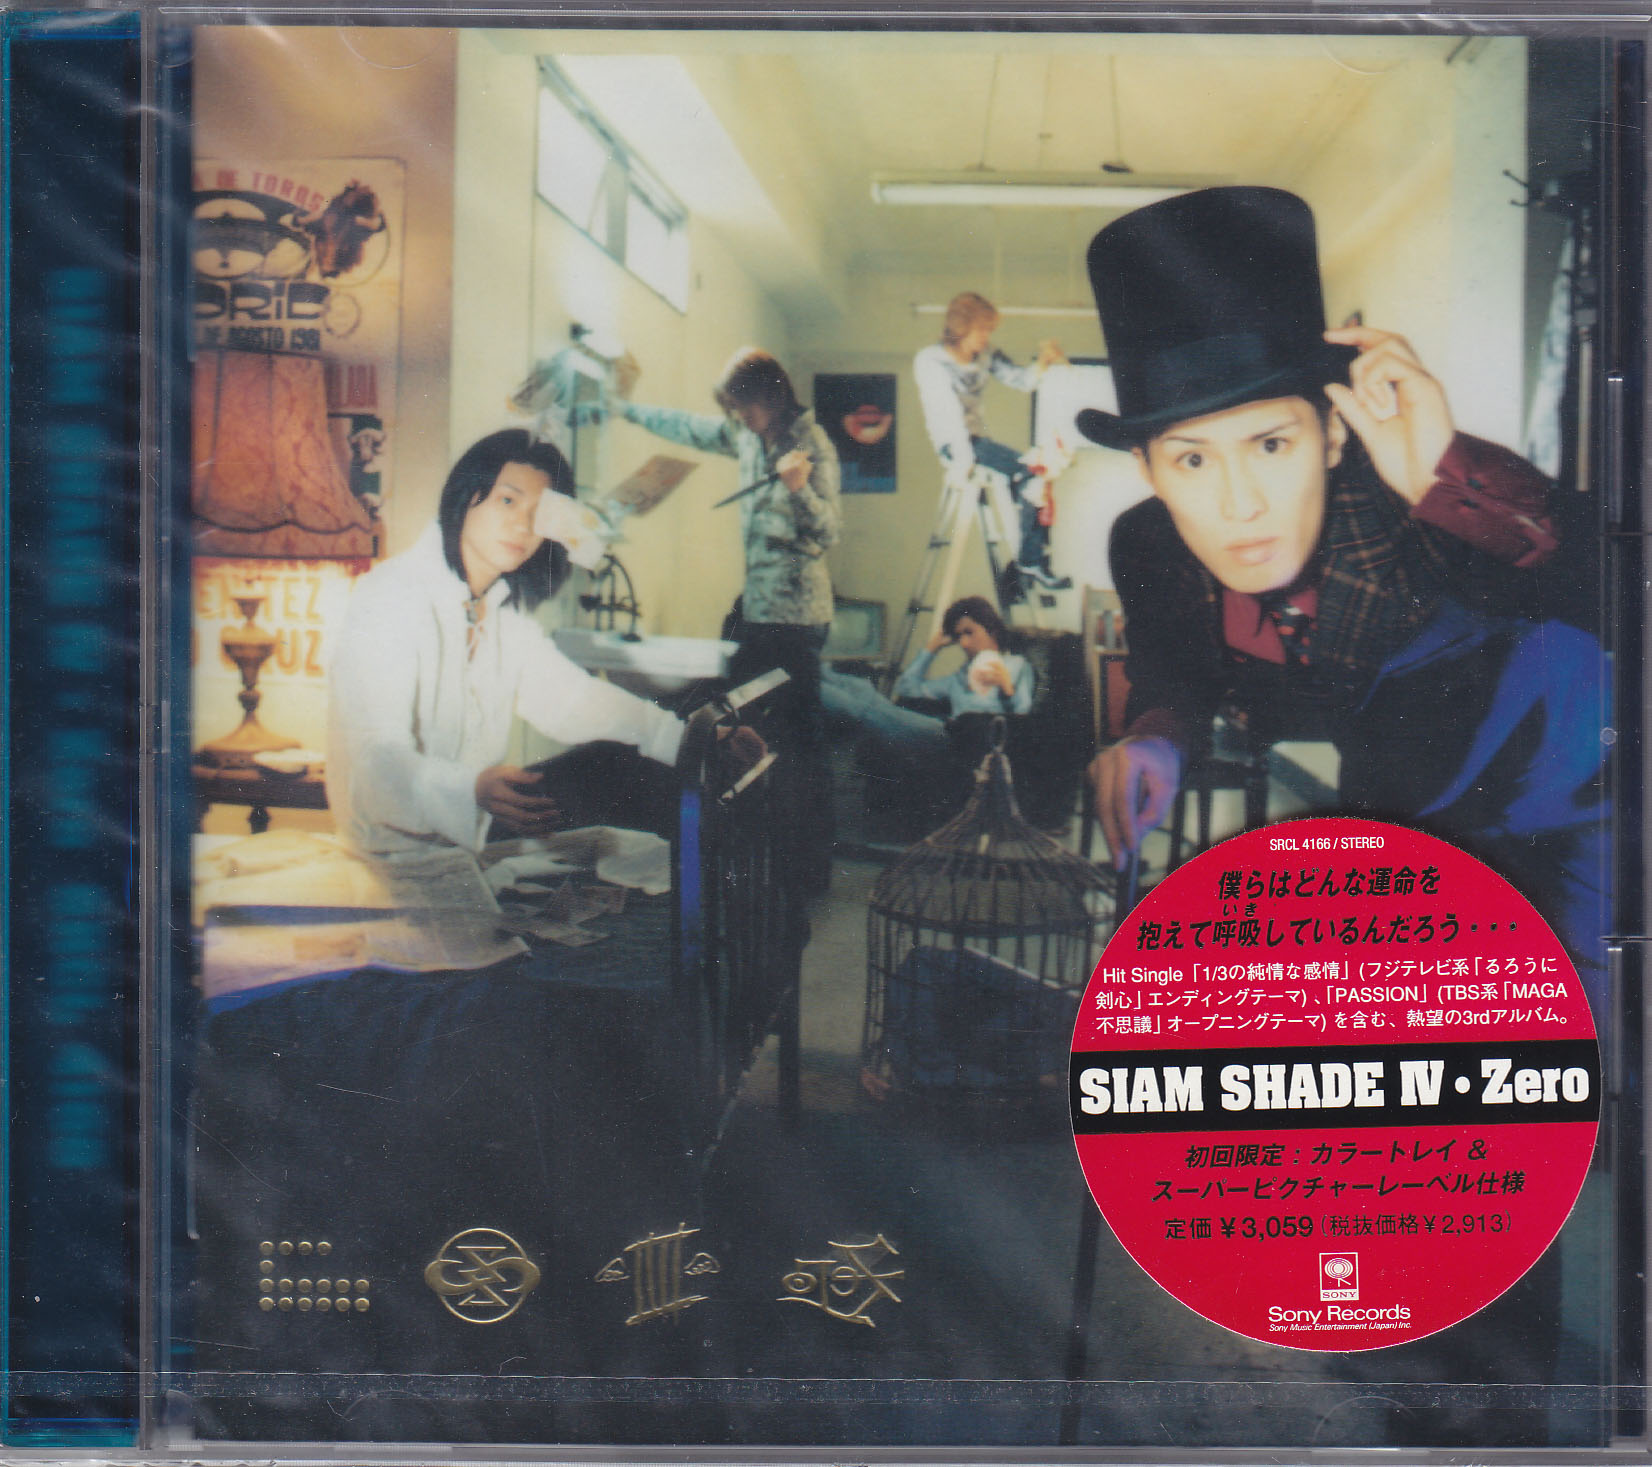 シャムシェイド の CD SIAM SHADE Ⅳ・Zero 初回盤